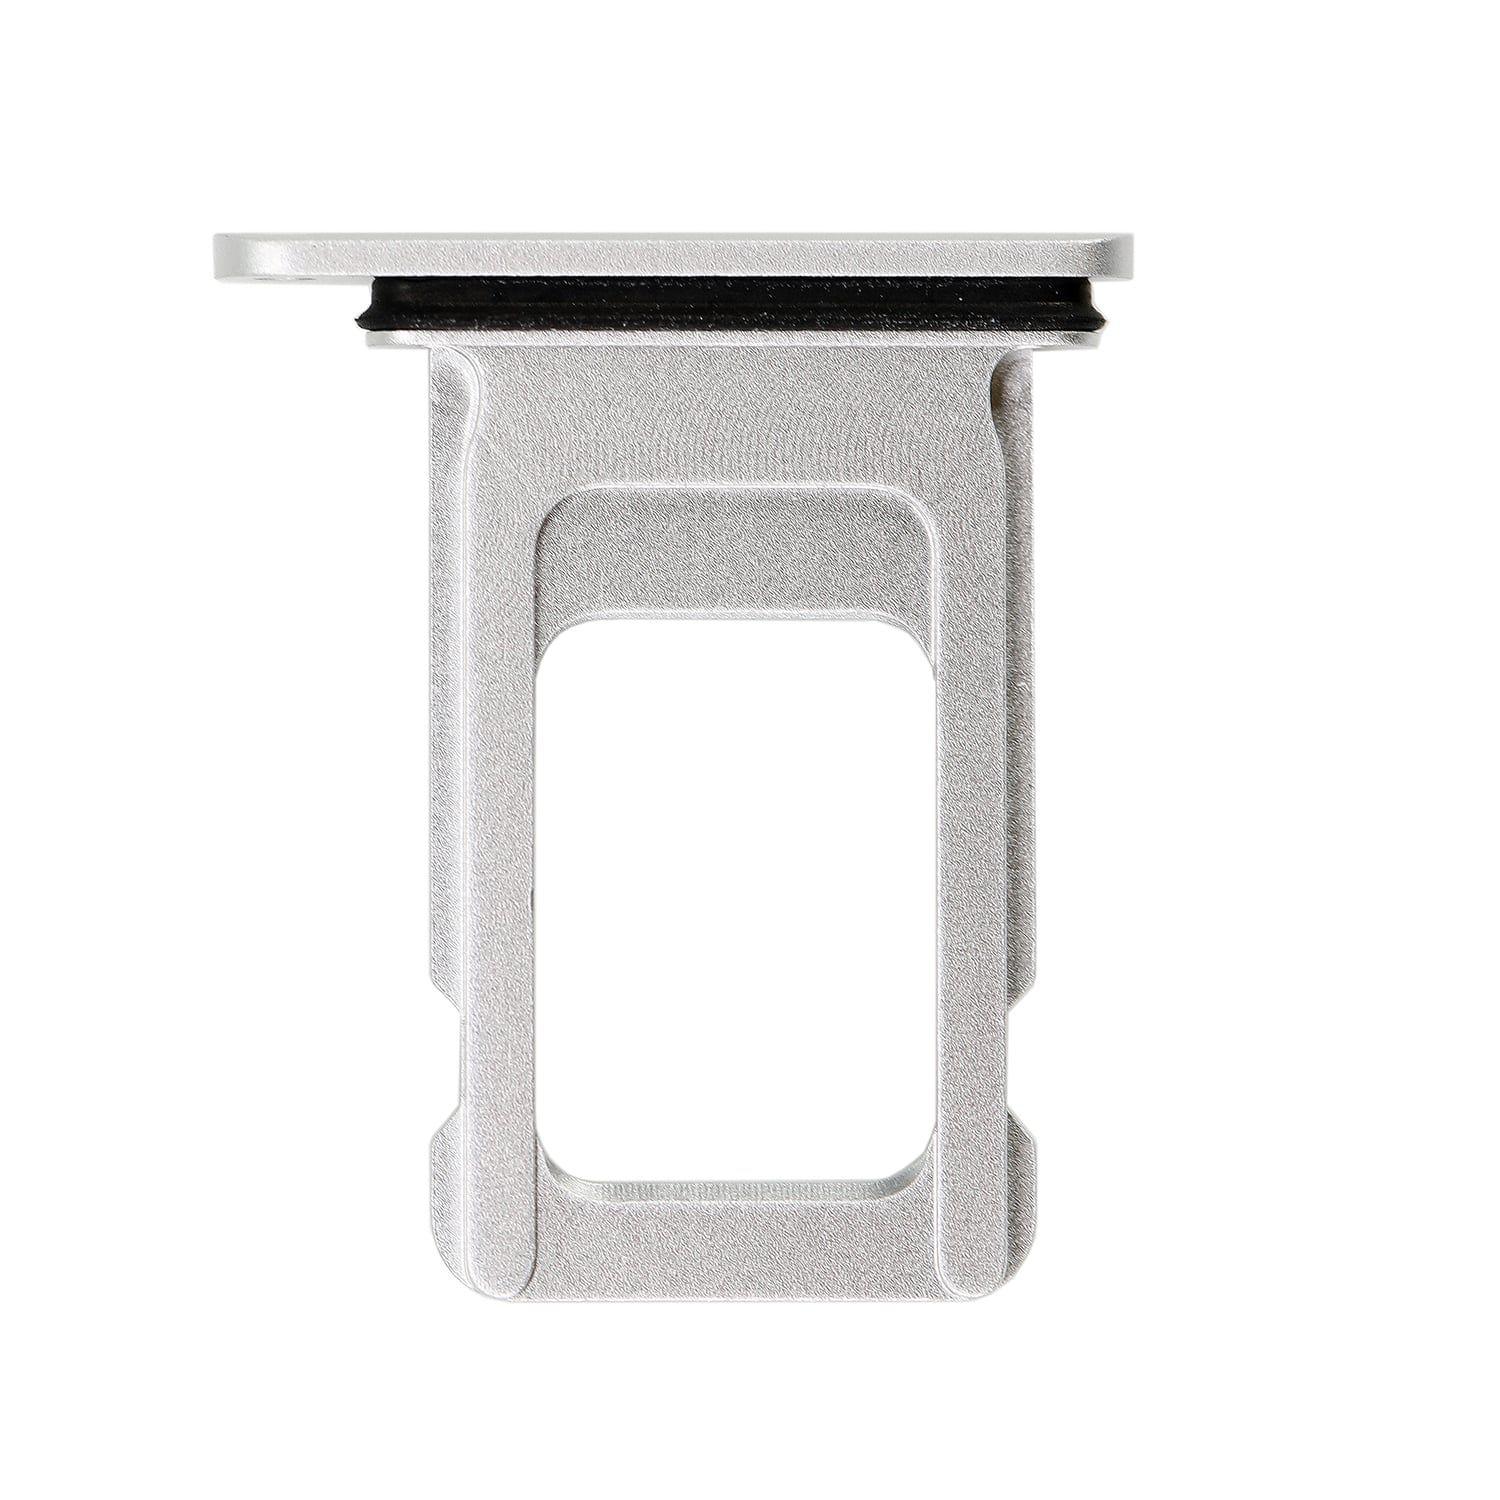 Držák / Slot SIM karty iPhone XR stříbrný